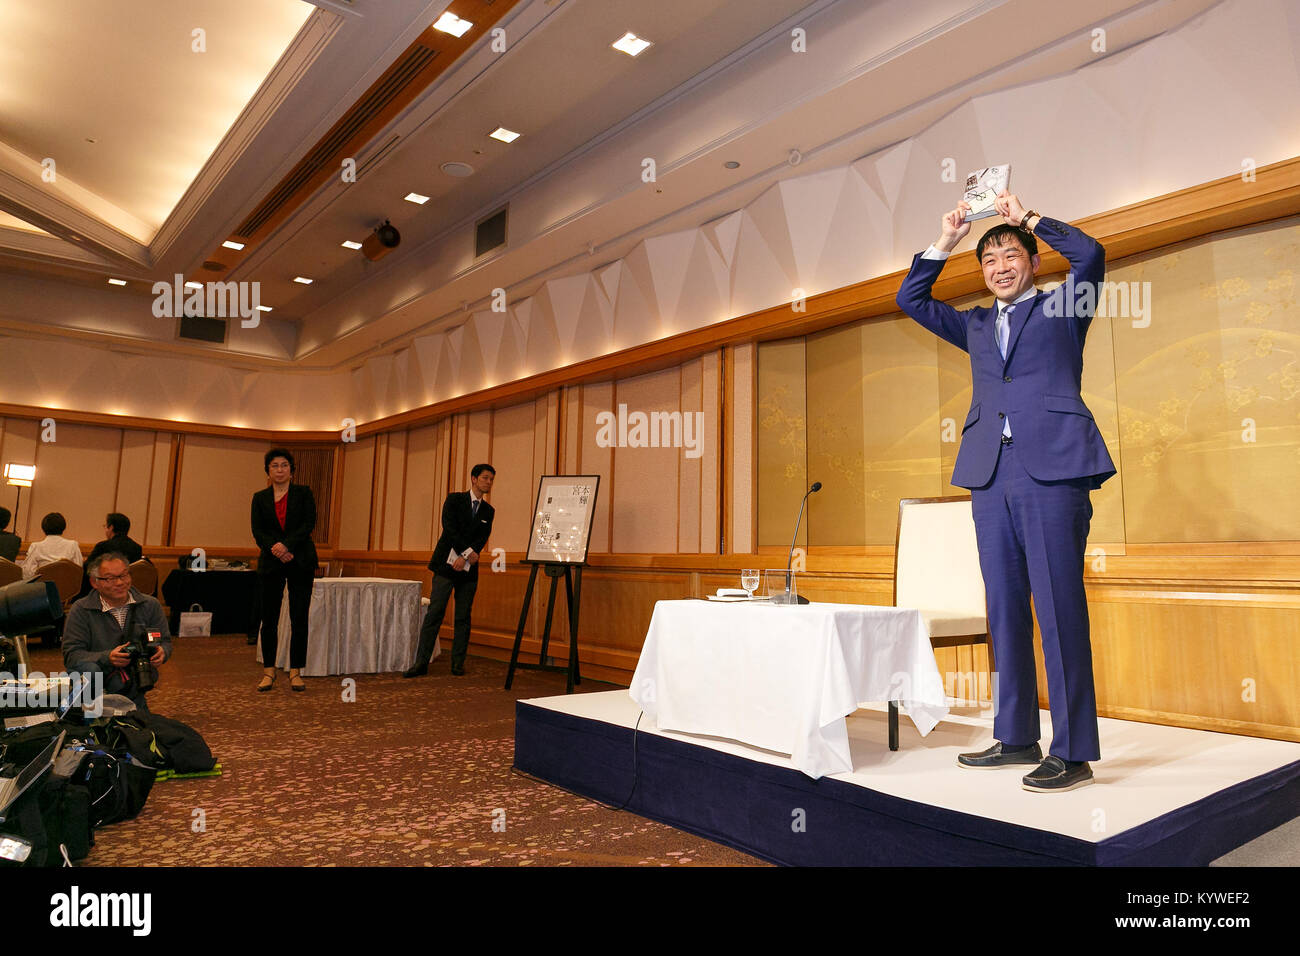 158Naoki il vincitore del Premio Yoshinobu Kadoi pone per le telecamere durante una conferenza stampa presso l'Imperial Hotel on gennaio 16, 2018 a Tokyo, Giappone. Chisako Wakatake vinto 158Akutagawa premio per il suo libro ''Ora orade hitori egumo (io andrò lontano tutti da me)'', lungo con Yuka Ishi che ha vinto il premio per la ''Hyaku-nen doro (un centinaio di anni di fango)''. Yoshinobu Kadoi ricevuto 158Naoki premio per il suo libro ''Ginga tetsudo no chichi (il padre di Galactic ferroviario)." i due premi letterari erano stati stabiliti nel 1935 e sono assegnati annualmente per la migliore storia seria publishe Foto Stock